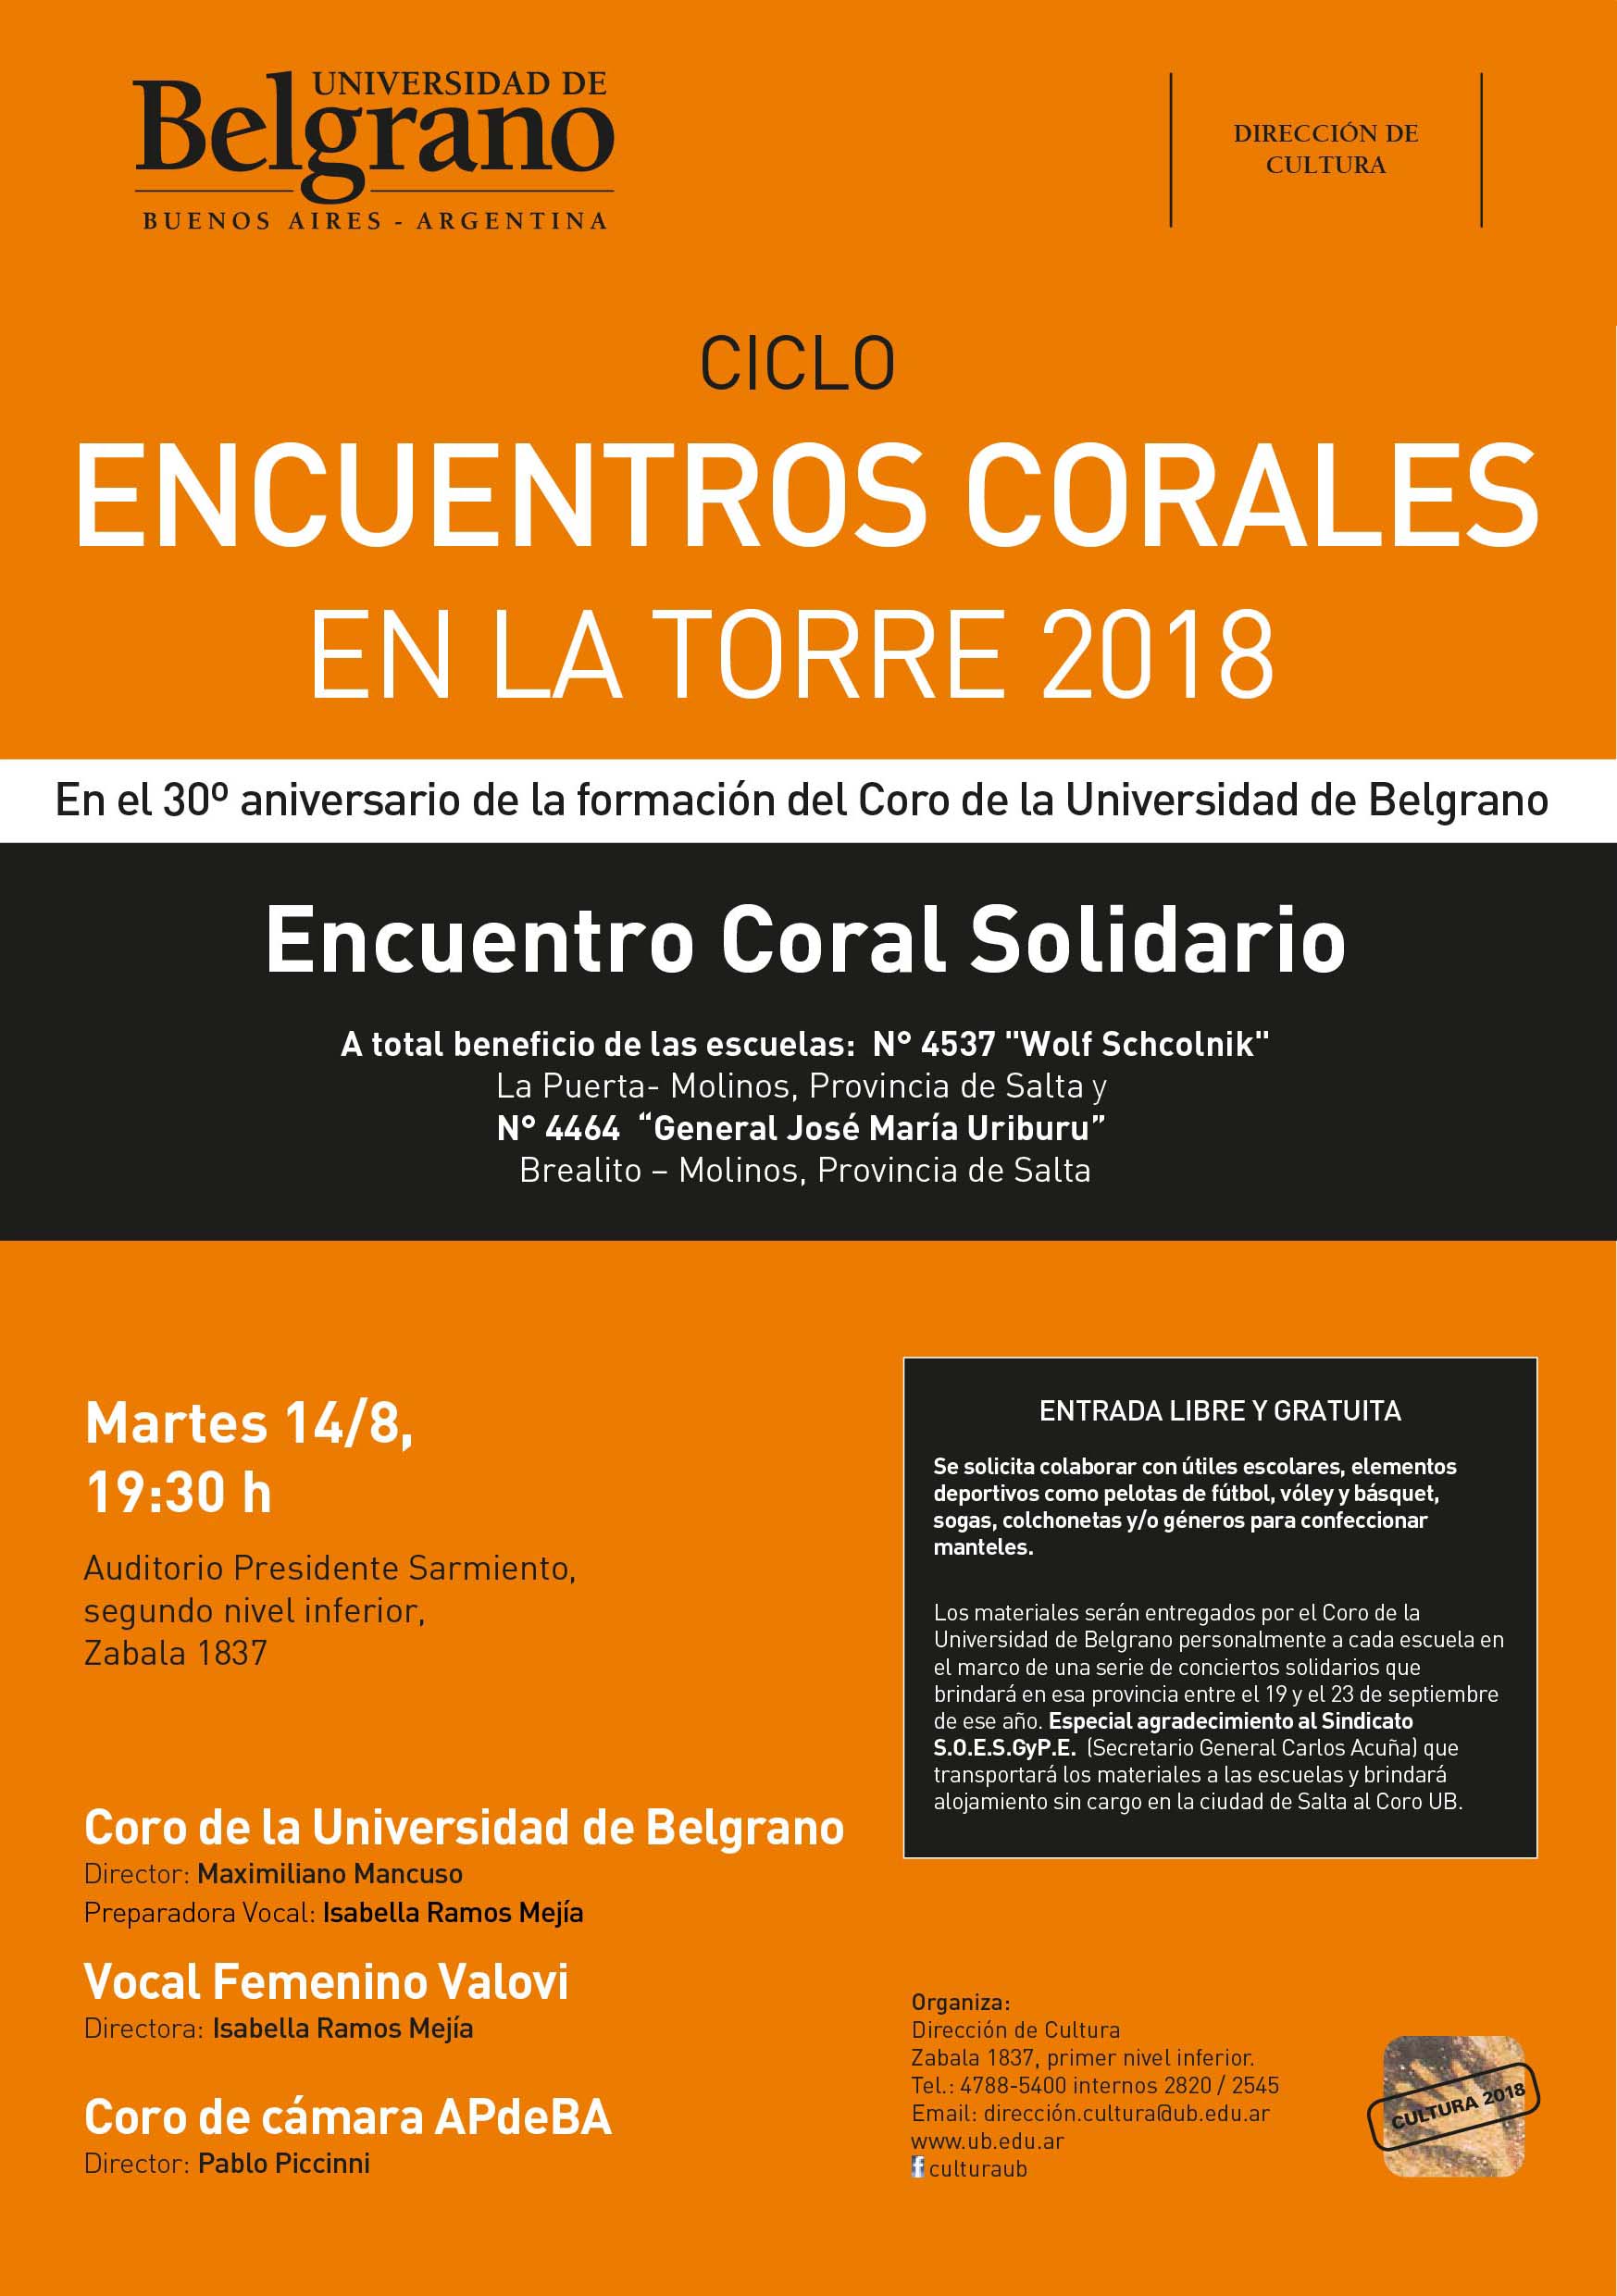 UB | Dirección de Cultura | Encuentros Corales